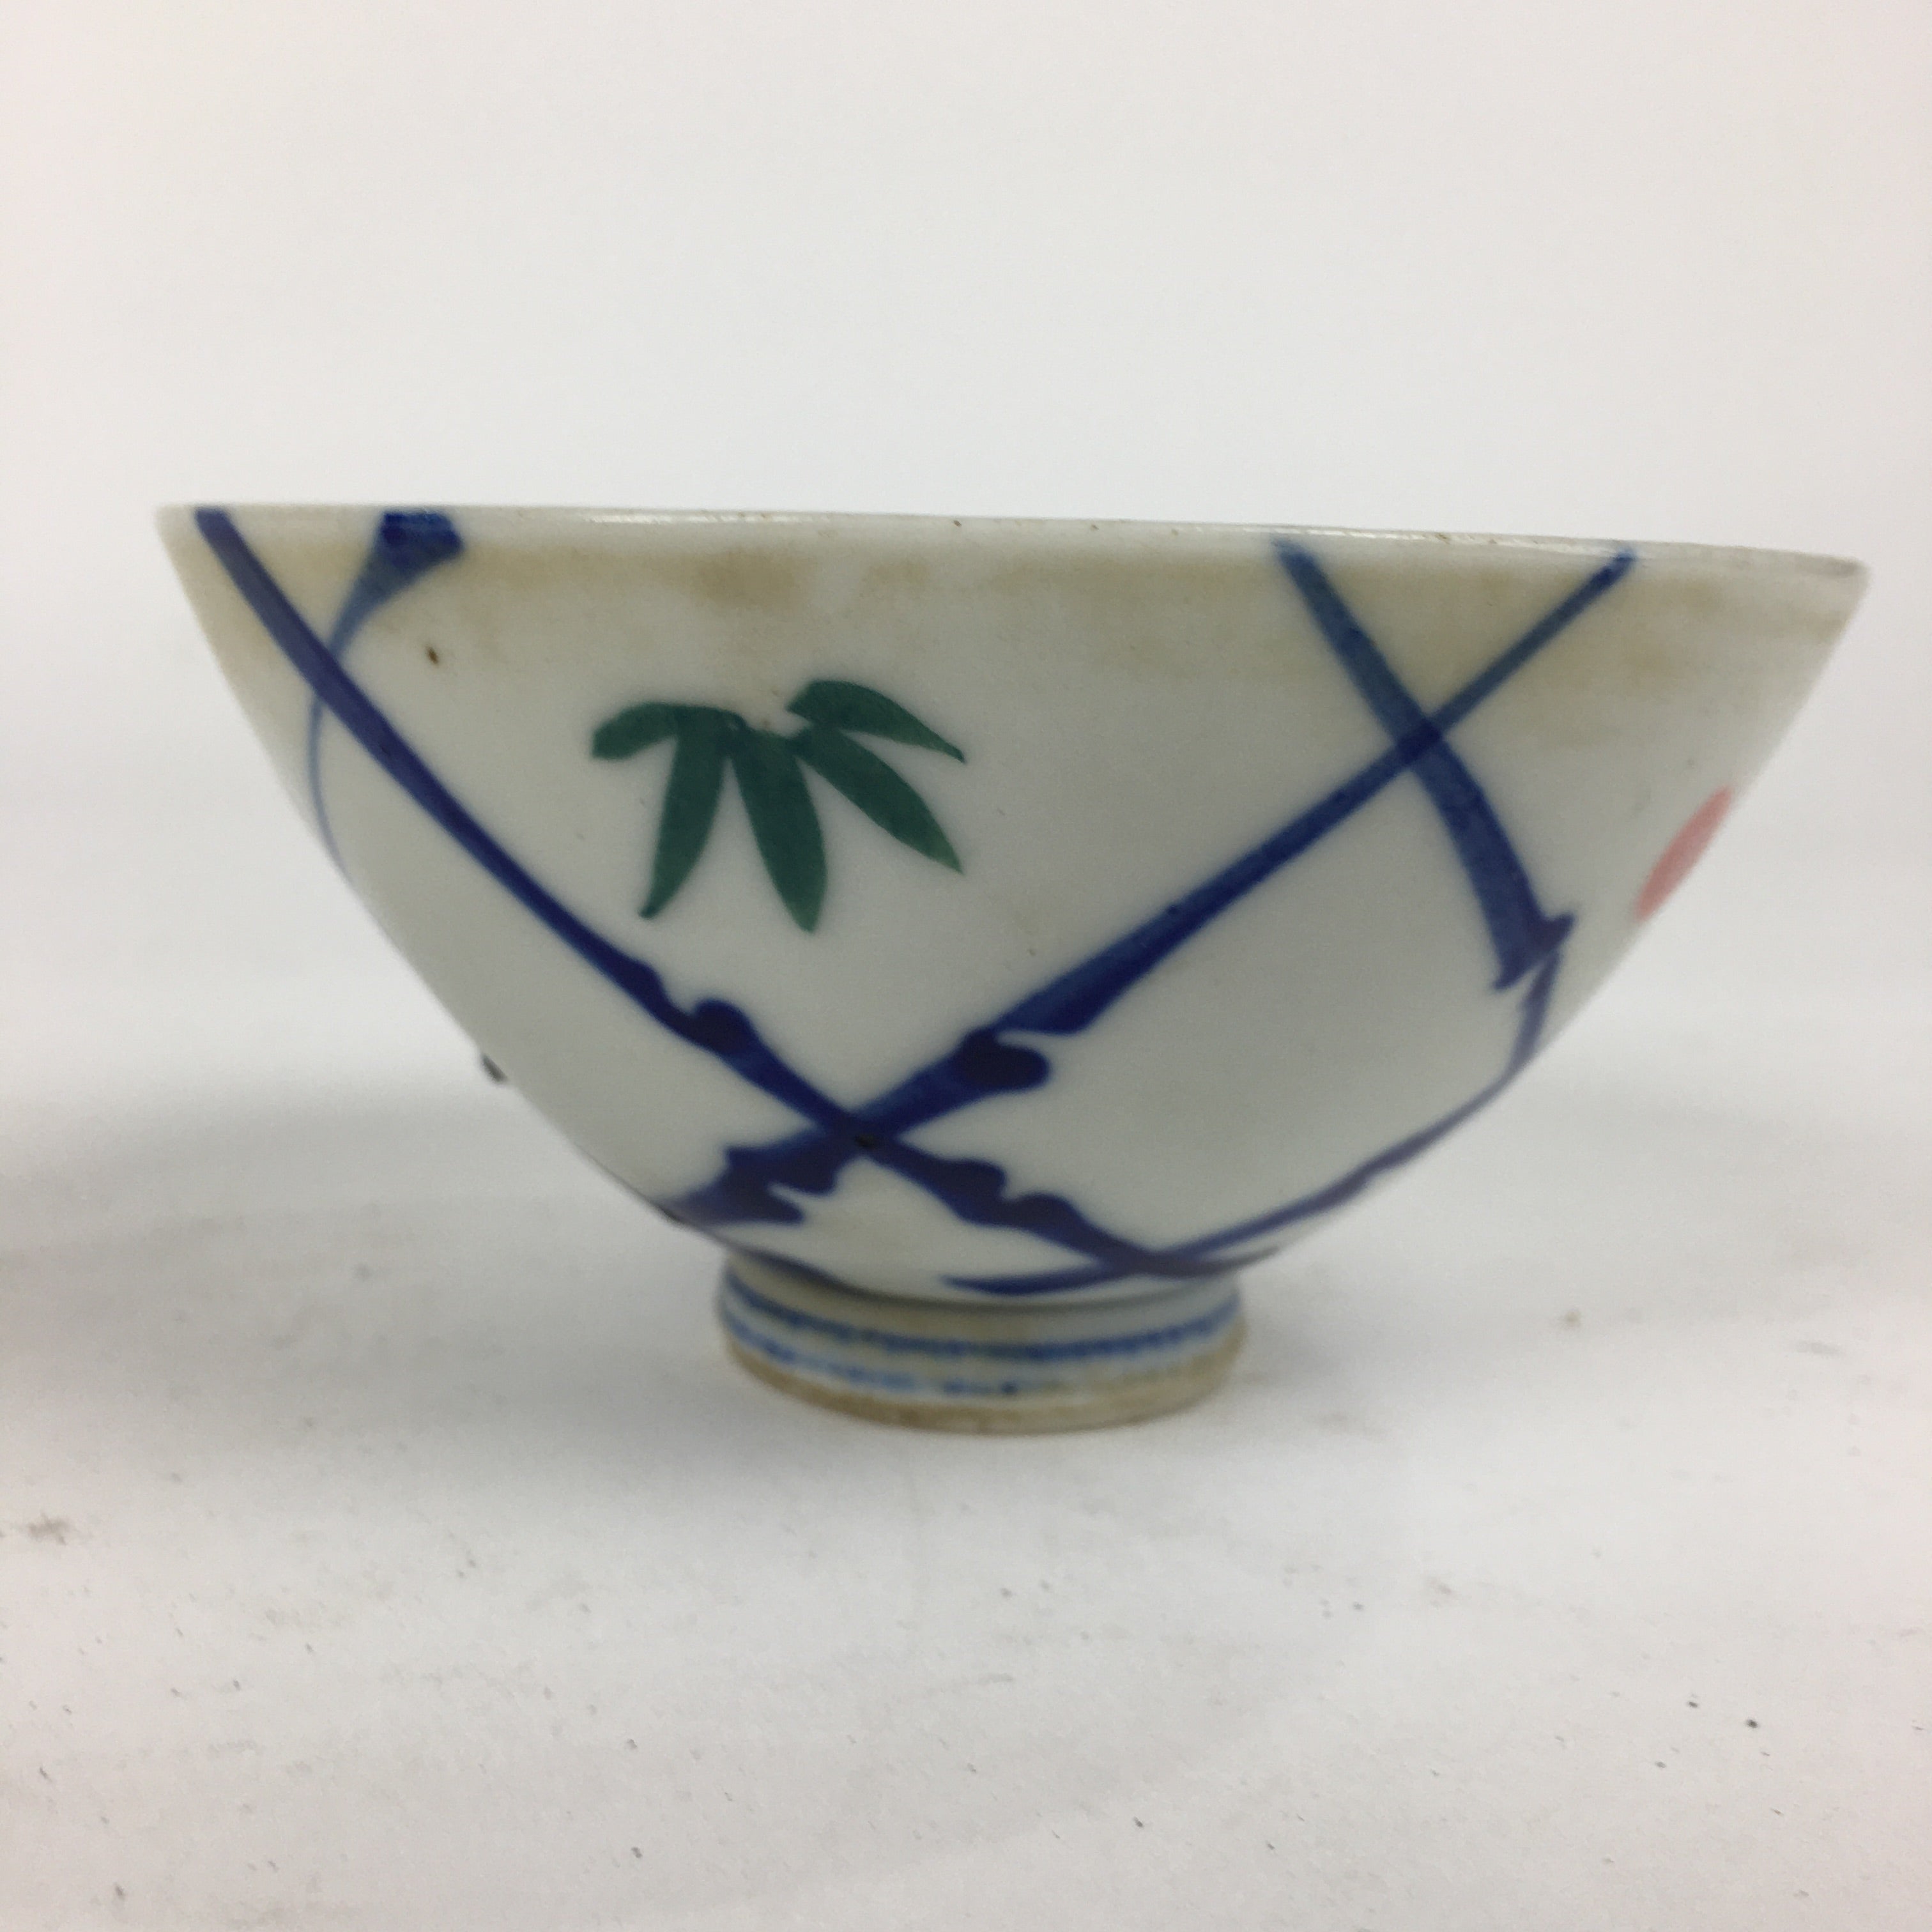 Japanese Porcelain Rice Bowl Vtg Plum blossoms Sometsuke White Chawan PP886